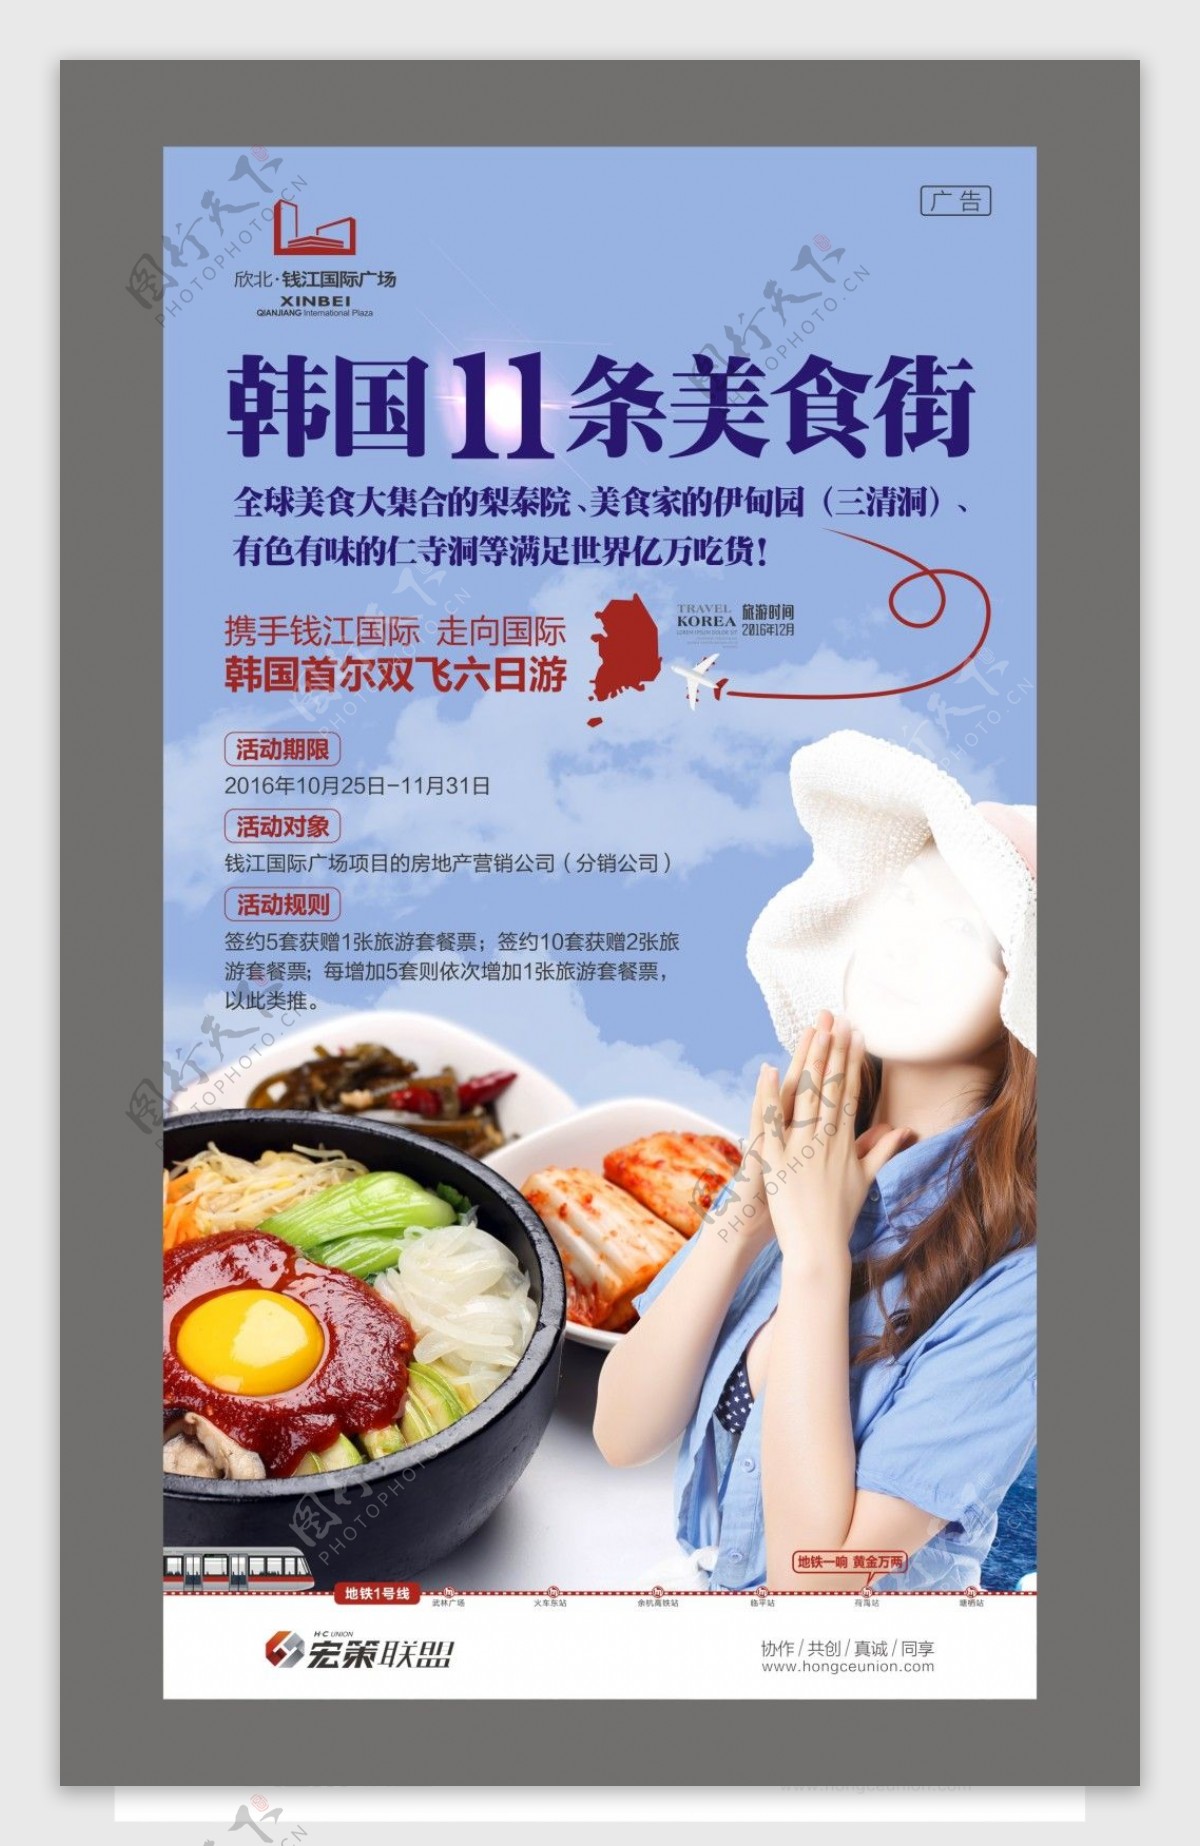 首尔游微信美食海报